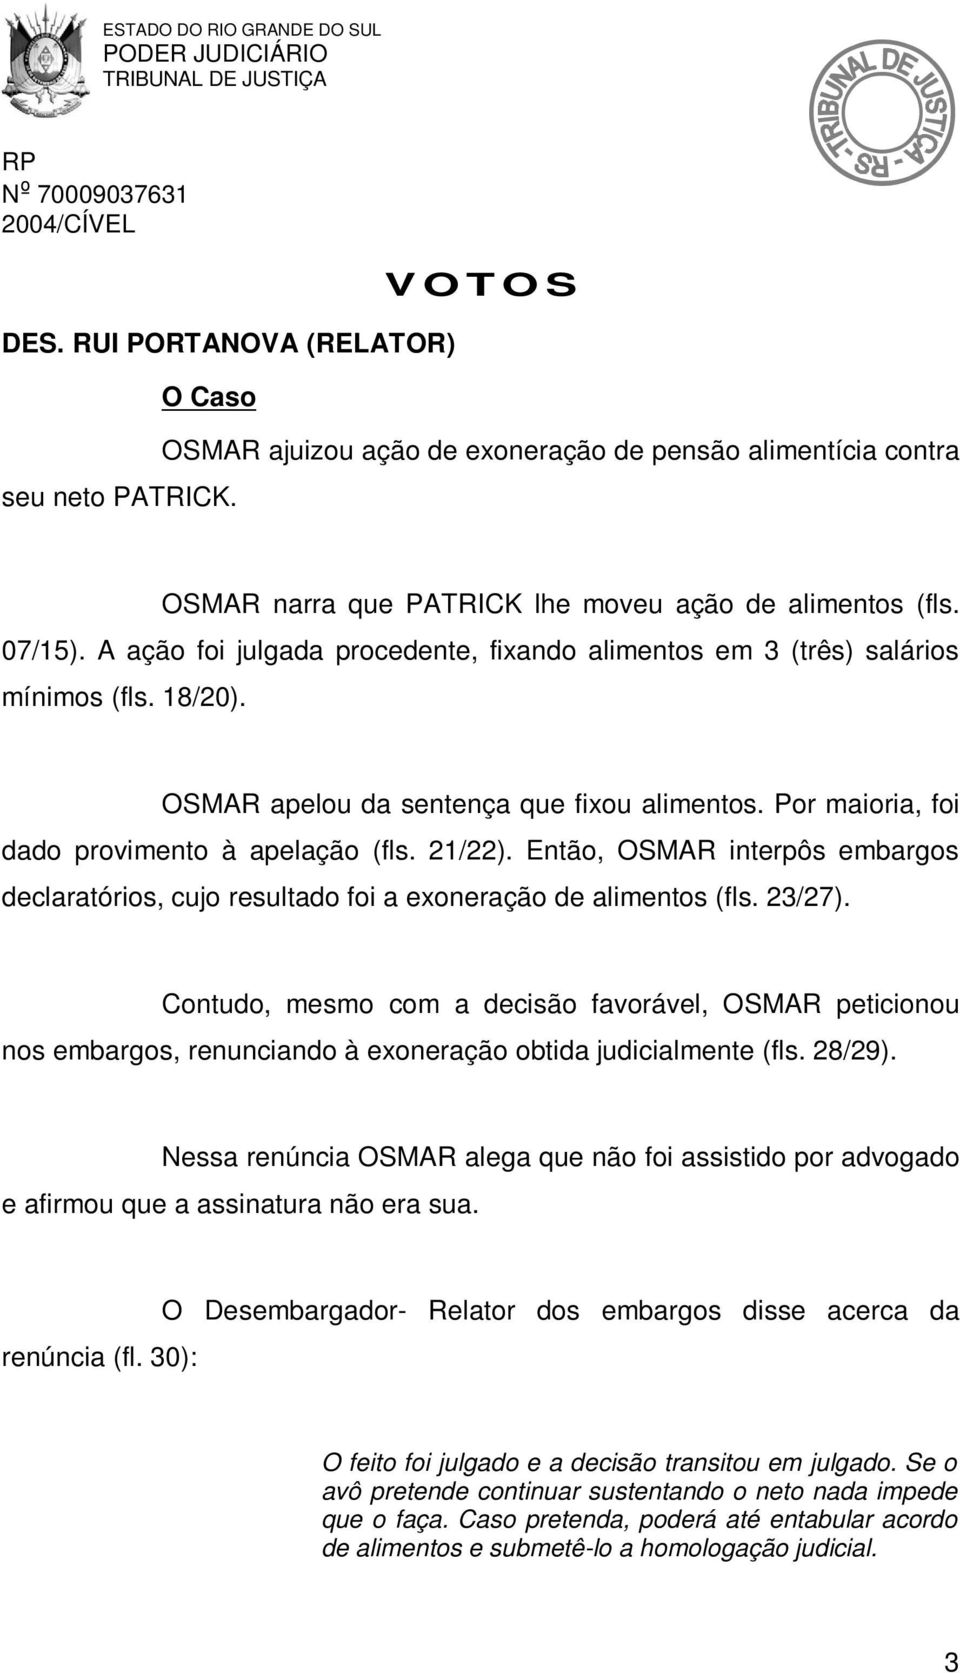 Então, OSMAR interpôs embargos declaratórios, cujo resultado foi a exoneração de alimentos (fls. 23/27).